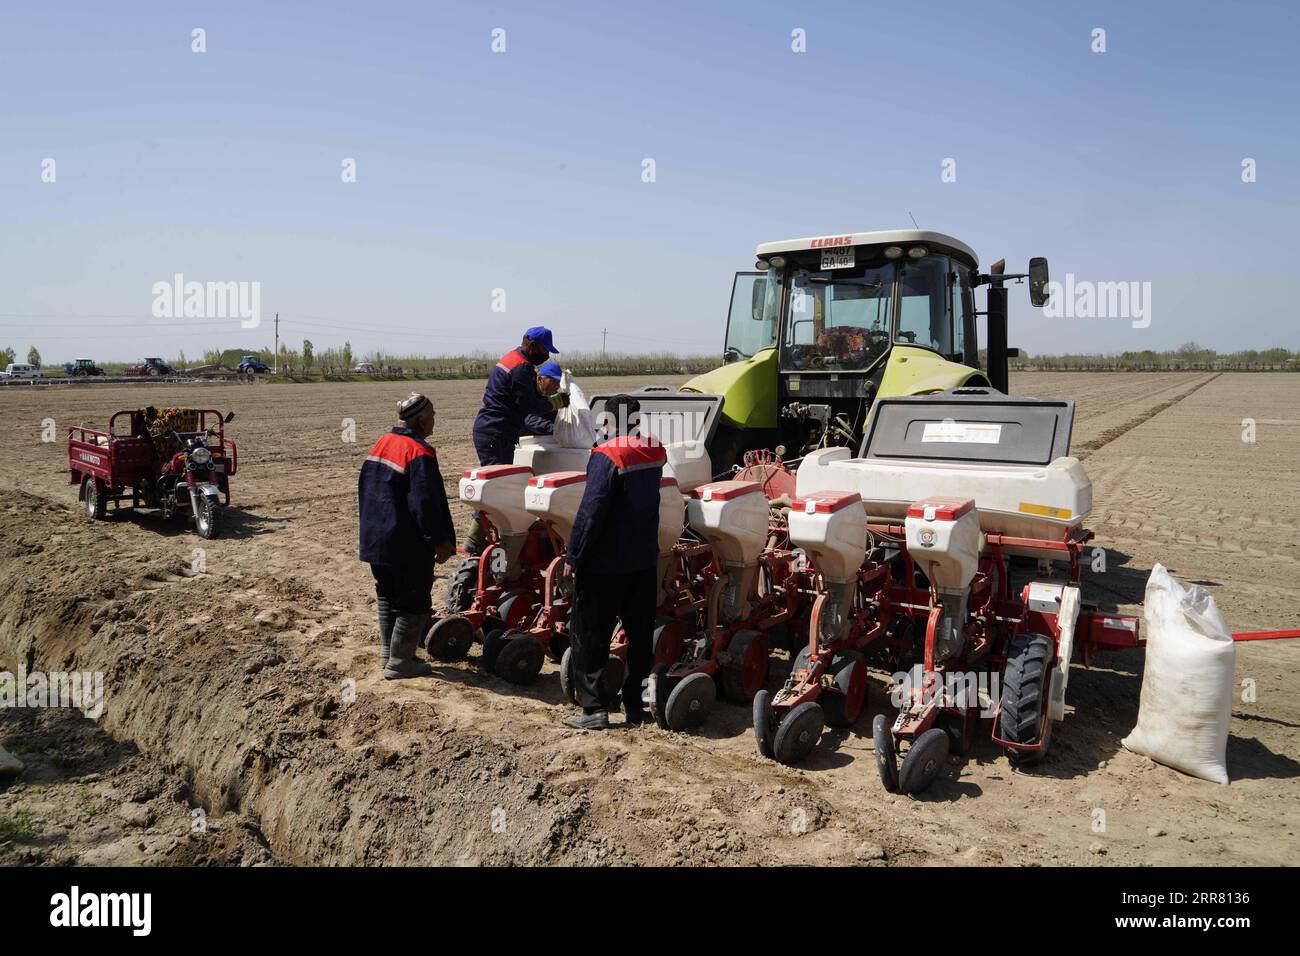 210411 -- FERGANA, 11 aprile 2021 -- i tecnici riempiono i semi di cotone in una seminatrice nella regione di Fergana, Uzbekistan, 9 aprile 2021. Foto di /Xinhua UZBEKISTAN-FERGANA-COTTON-FARMING ZafarxKhalilov PUBLICATIONxNOTxINxCHN Foto Stock